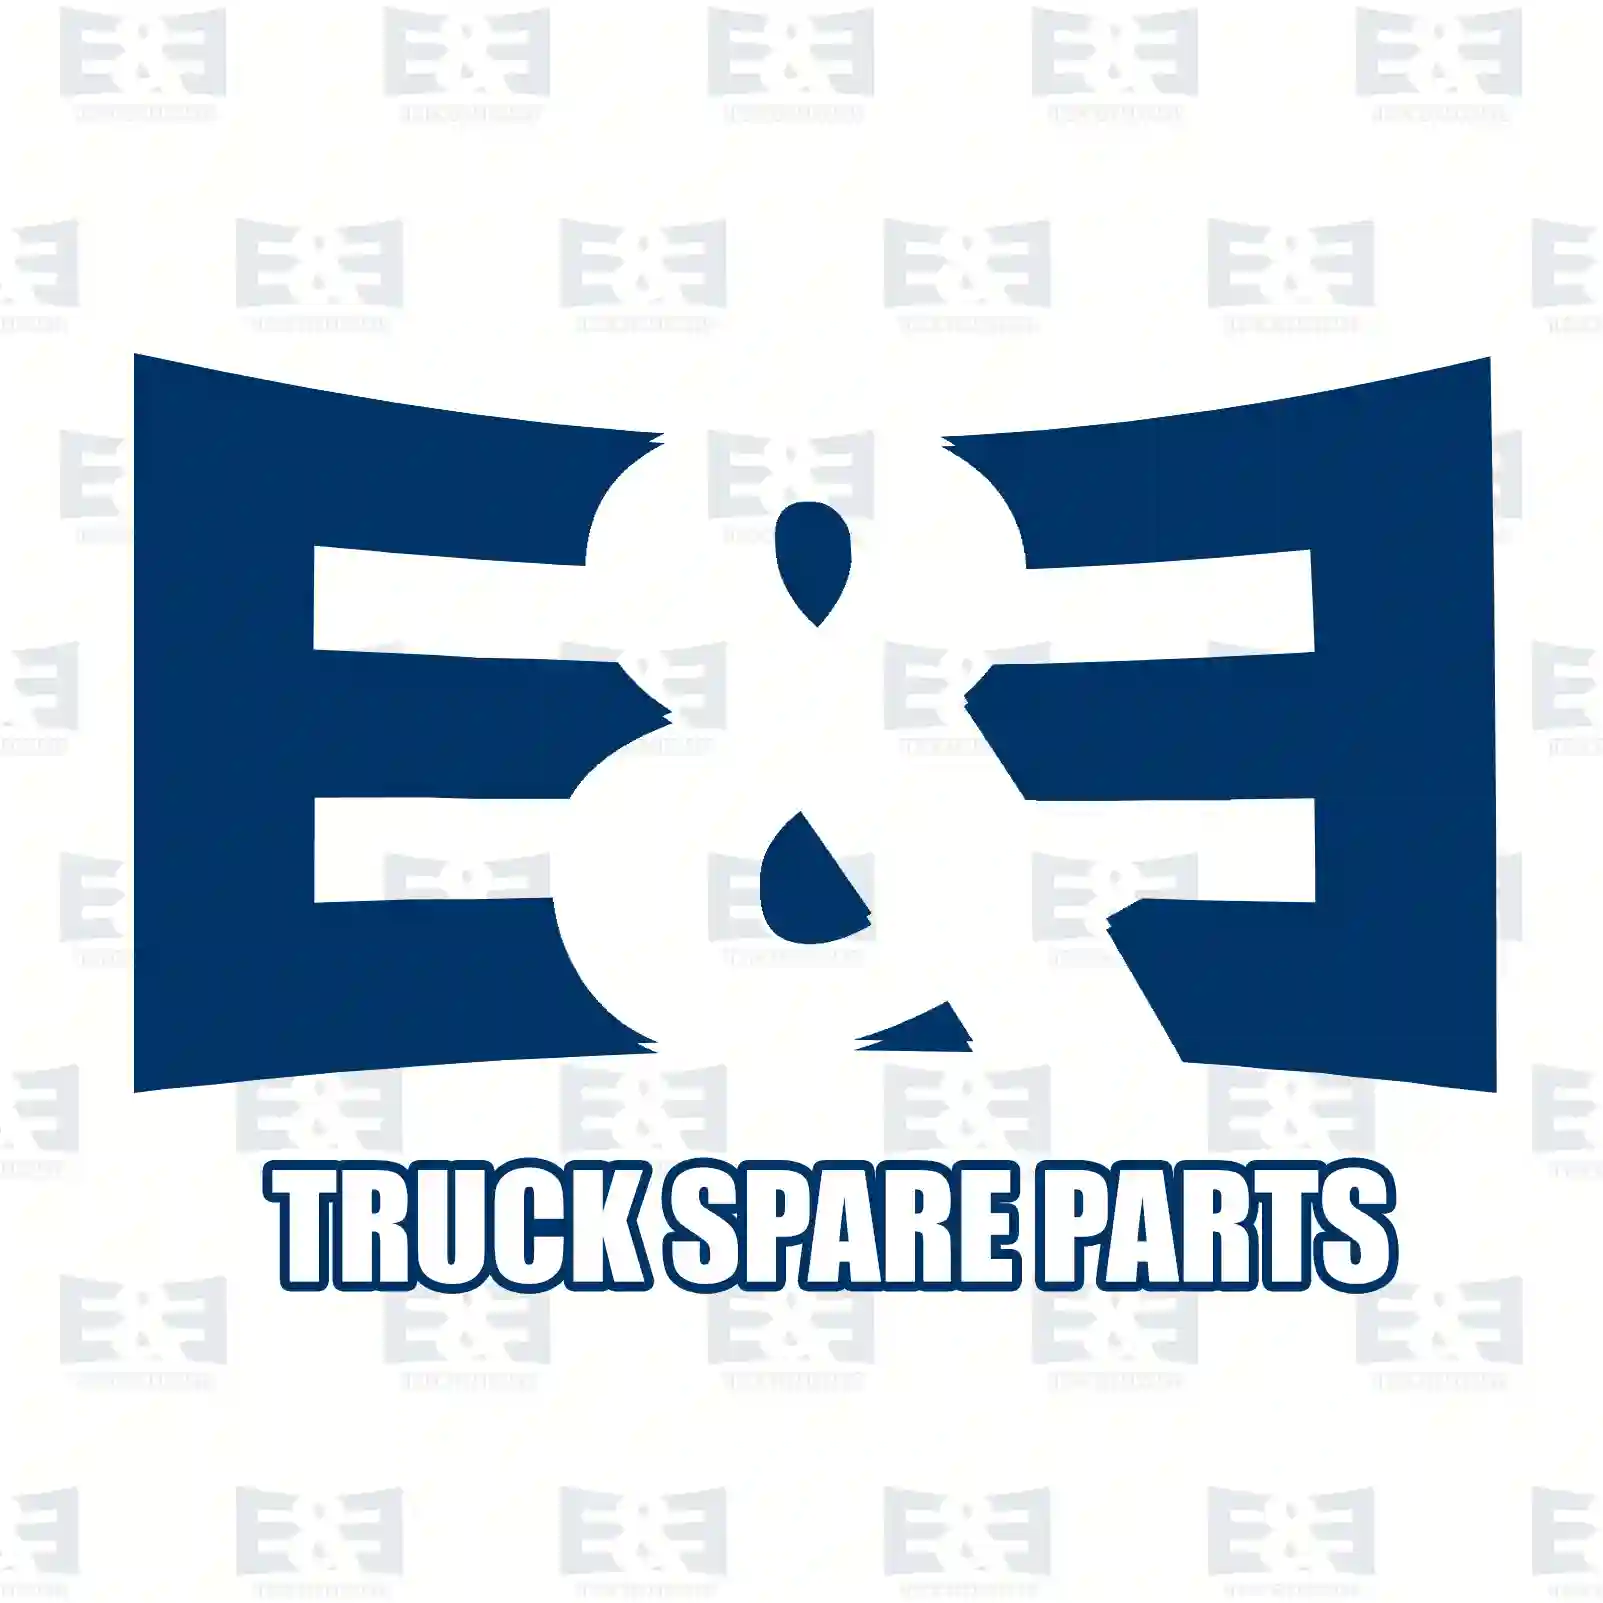 Vacuum sensor, intake manifold, 2E2298667, 8942097209, 8942097209000, 1119939, 1439900, 1S7A-9F479-AB, 1S7A-9F479-AC, LF0118211, LF0118211Z02, 16881, 89420-97209, 30658184, 31251242 ||  2E2298667 E&E Truck Spare Parts | Truck Spare Parts, Auotomotive Spare Parts Vacuum sensor, intake manifold, 2E2298667, 8942097209, 8942097209000, 1119939, 1439900, 1S7A-9F479-AB, 1S7A-9F479-AC, LF0118211, LF0118211Z02, 16881, 89420-97209, 30658184, 31251242 ||  2E2298667 E&E Truck Spare Parts | Truck Spare Parts, Auotomotive Spare Parts